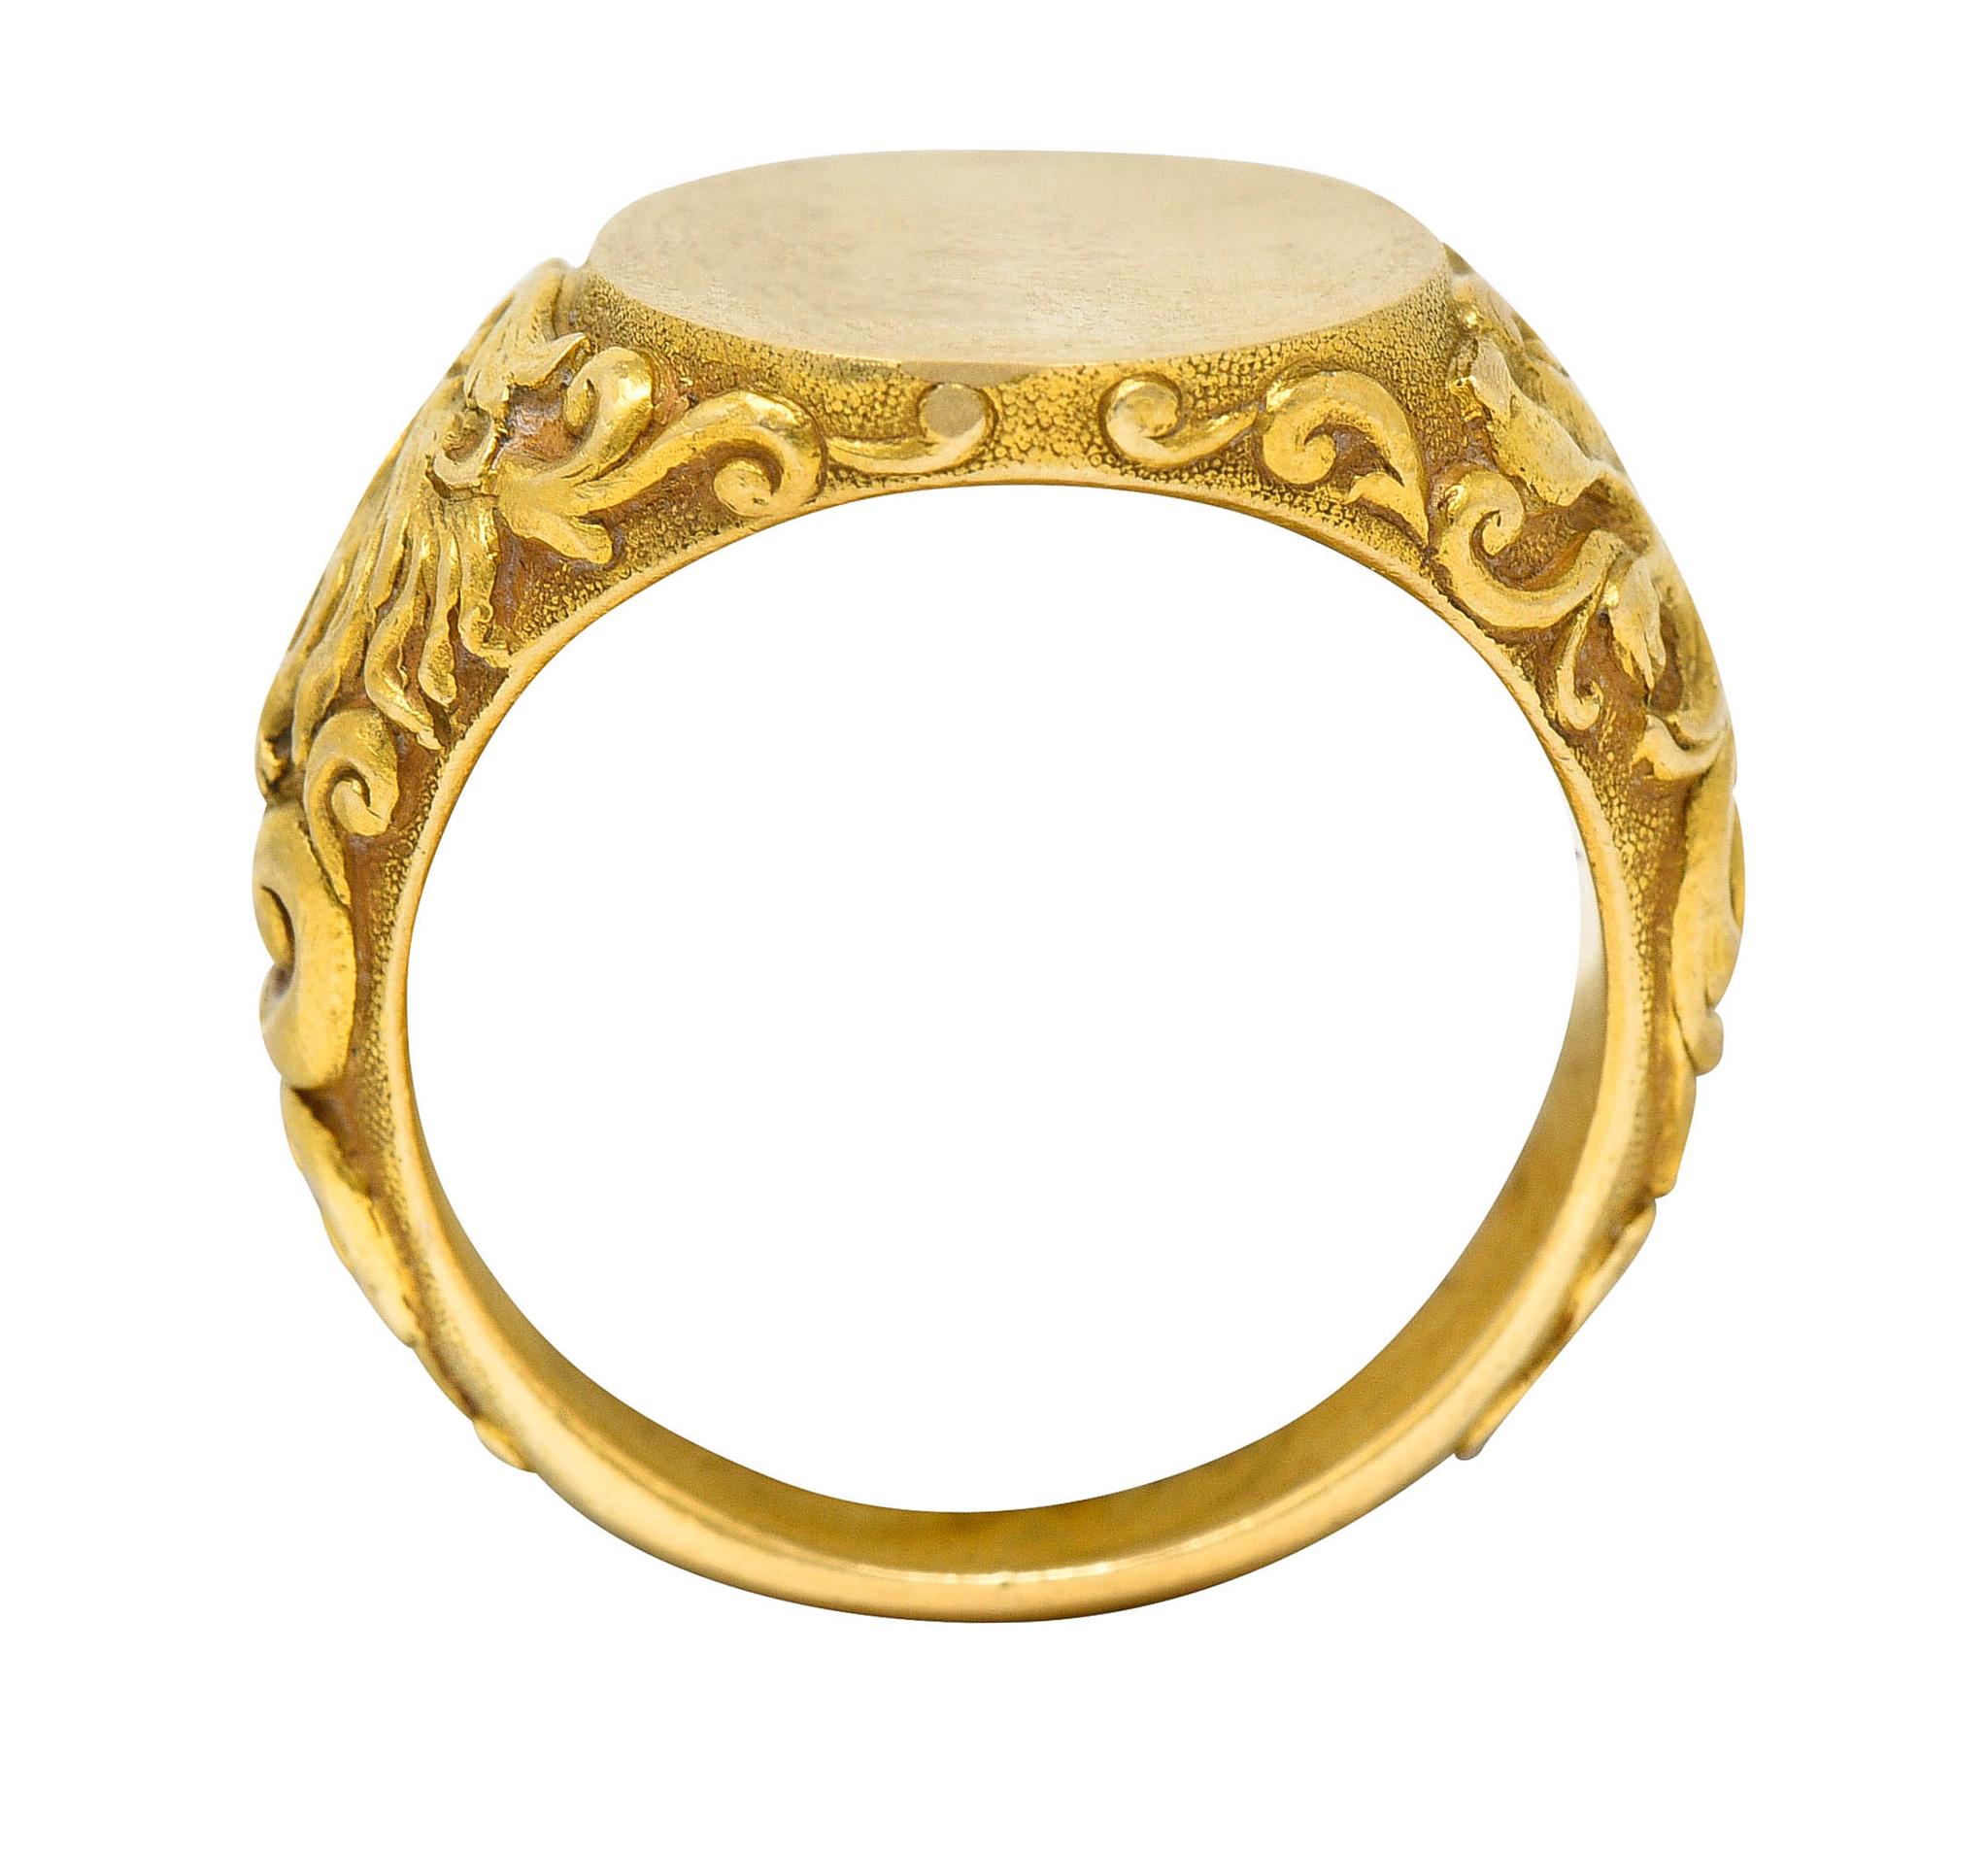 Tiffany & Co. Art Nouveau 18 Karat Gold Unisex Lion Signet Ring 6